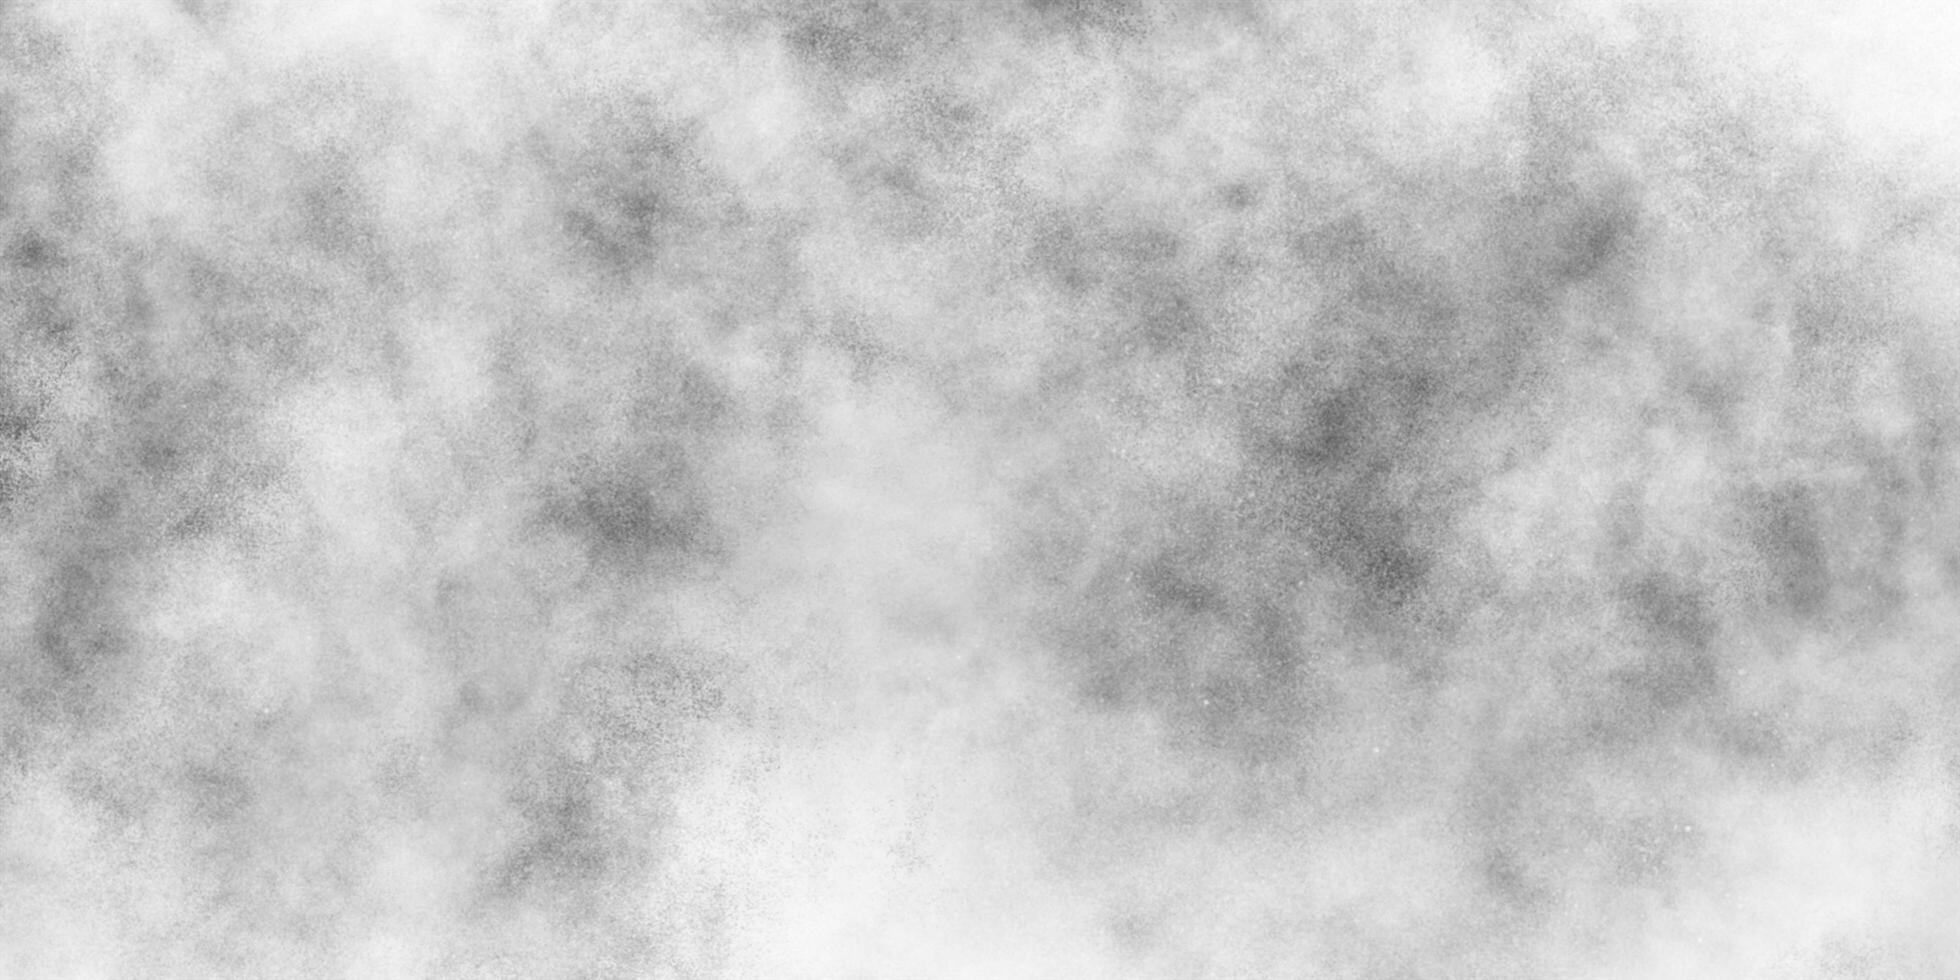 lindo embaçado abstrato Preto e branco textura fundo com fumaça, abstrato grunge branco ou cinzento aguarela pintura fundo, concreto velho e granulado parede branco cor grunge textura. foto